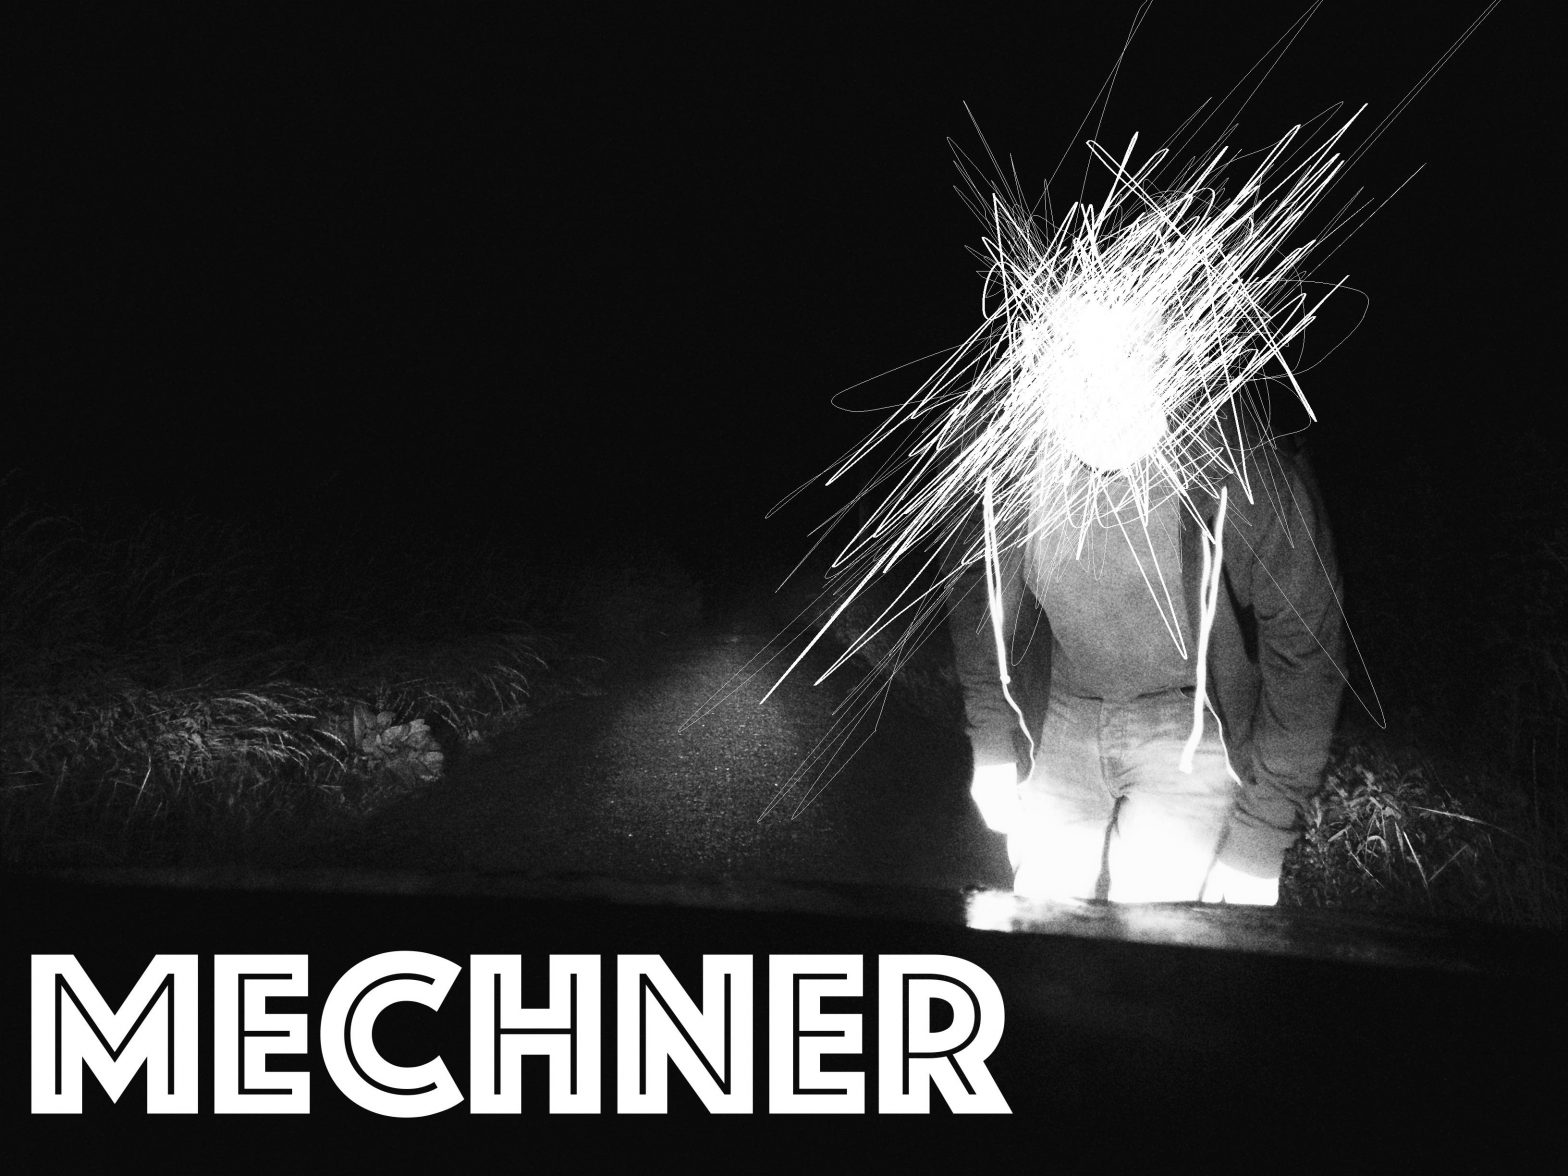 Album cover art for Mechner - unsigned musician